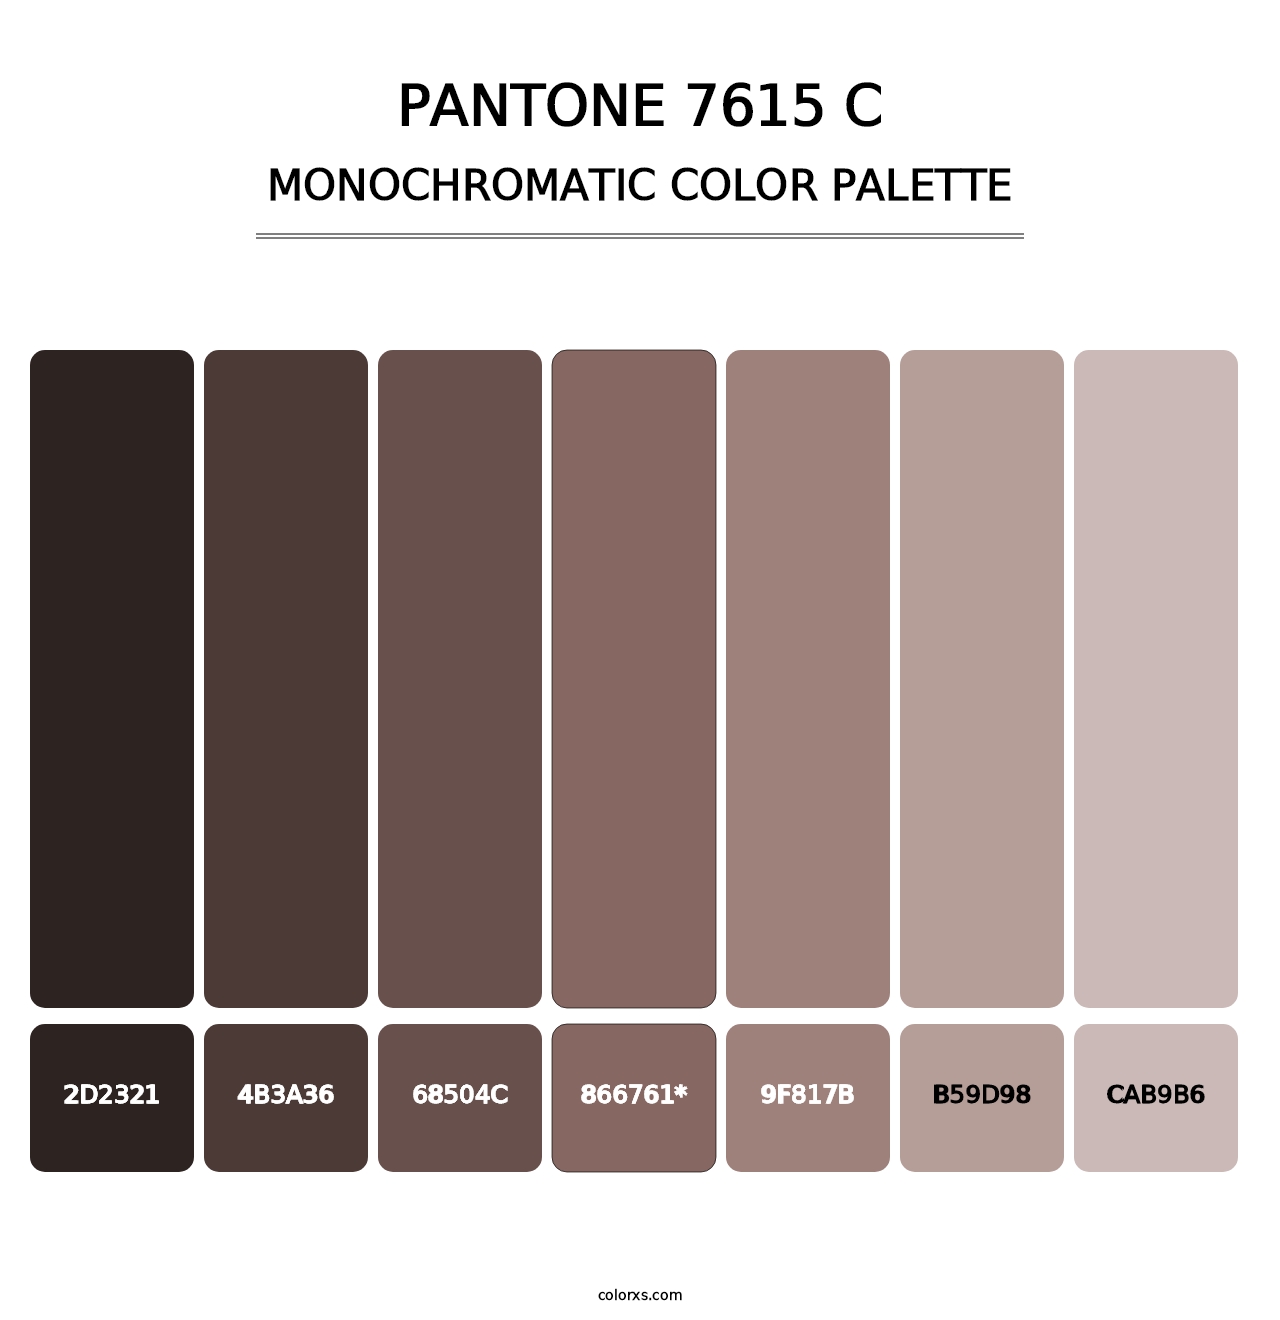 PANTONE 7615 C - Monochromatic Color Palette